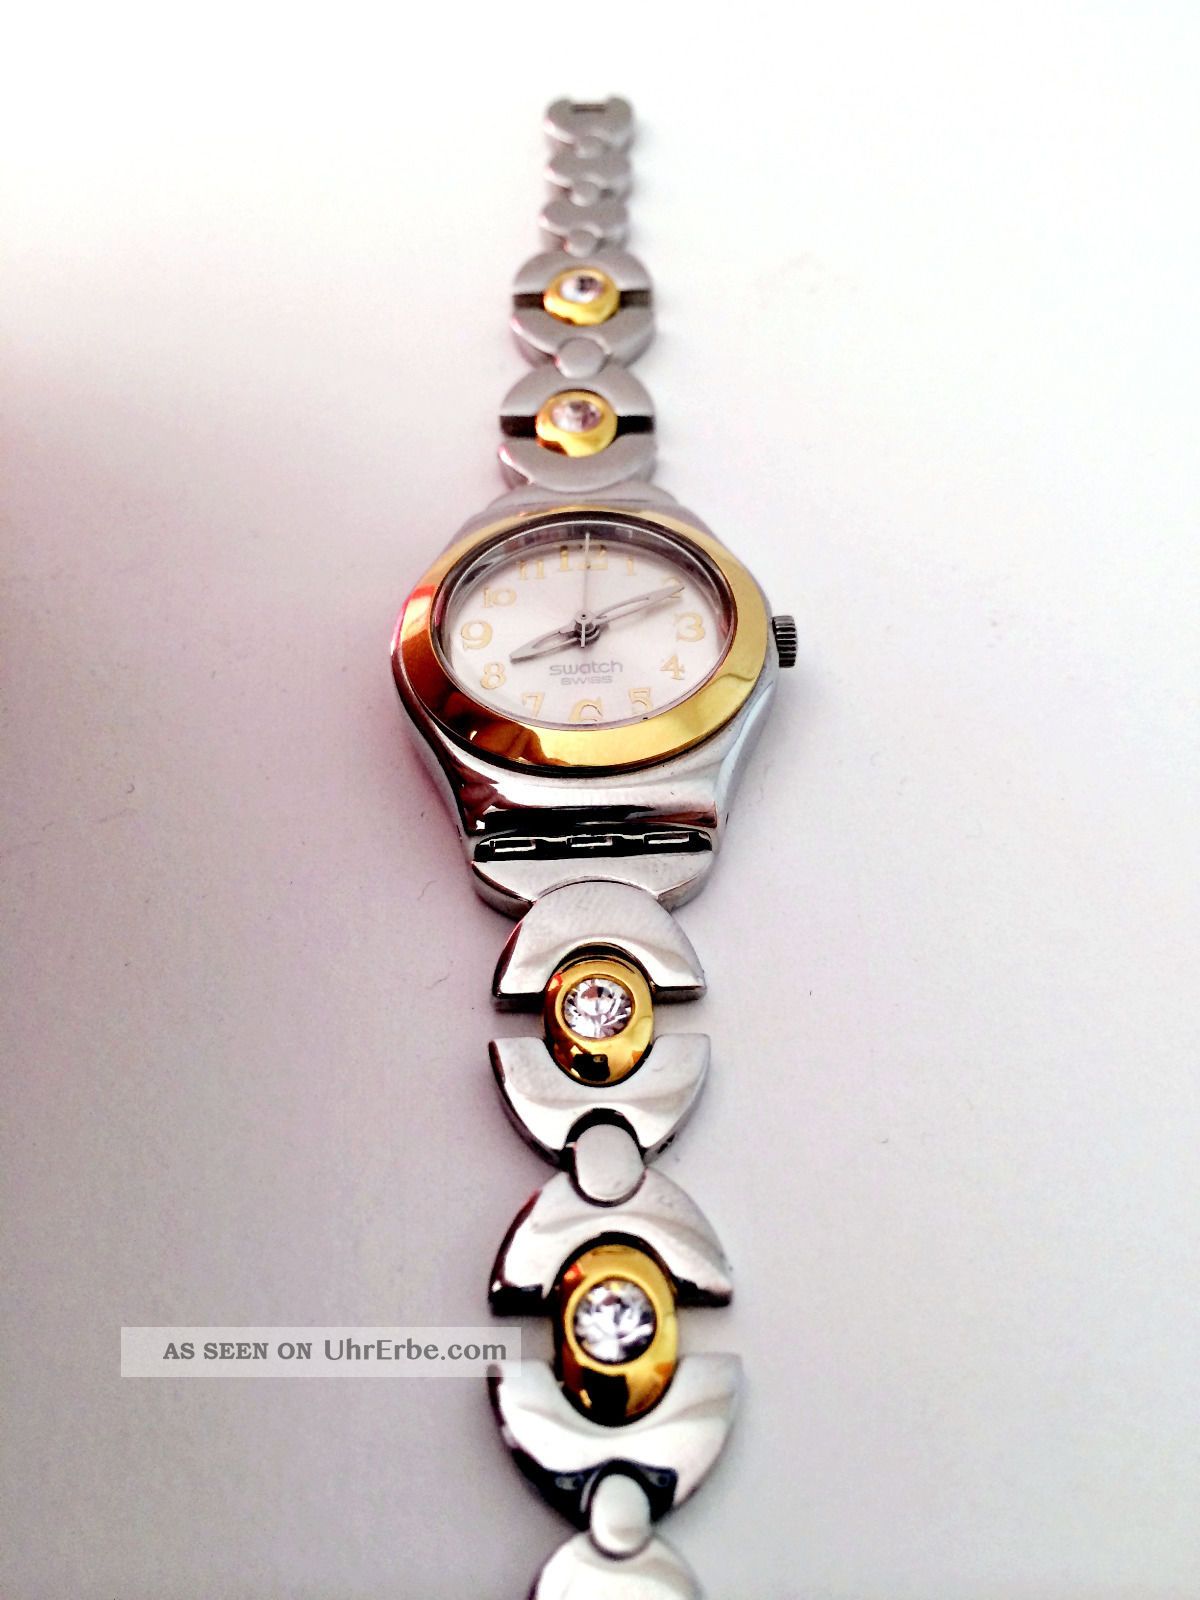 Swatch Damenuhr - Irony Yss In Silber Mit Goldenen Elementen / Lady Armbanduhren Bild